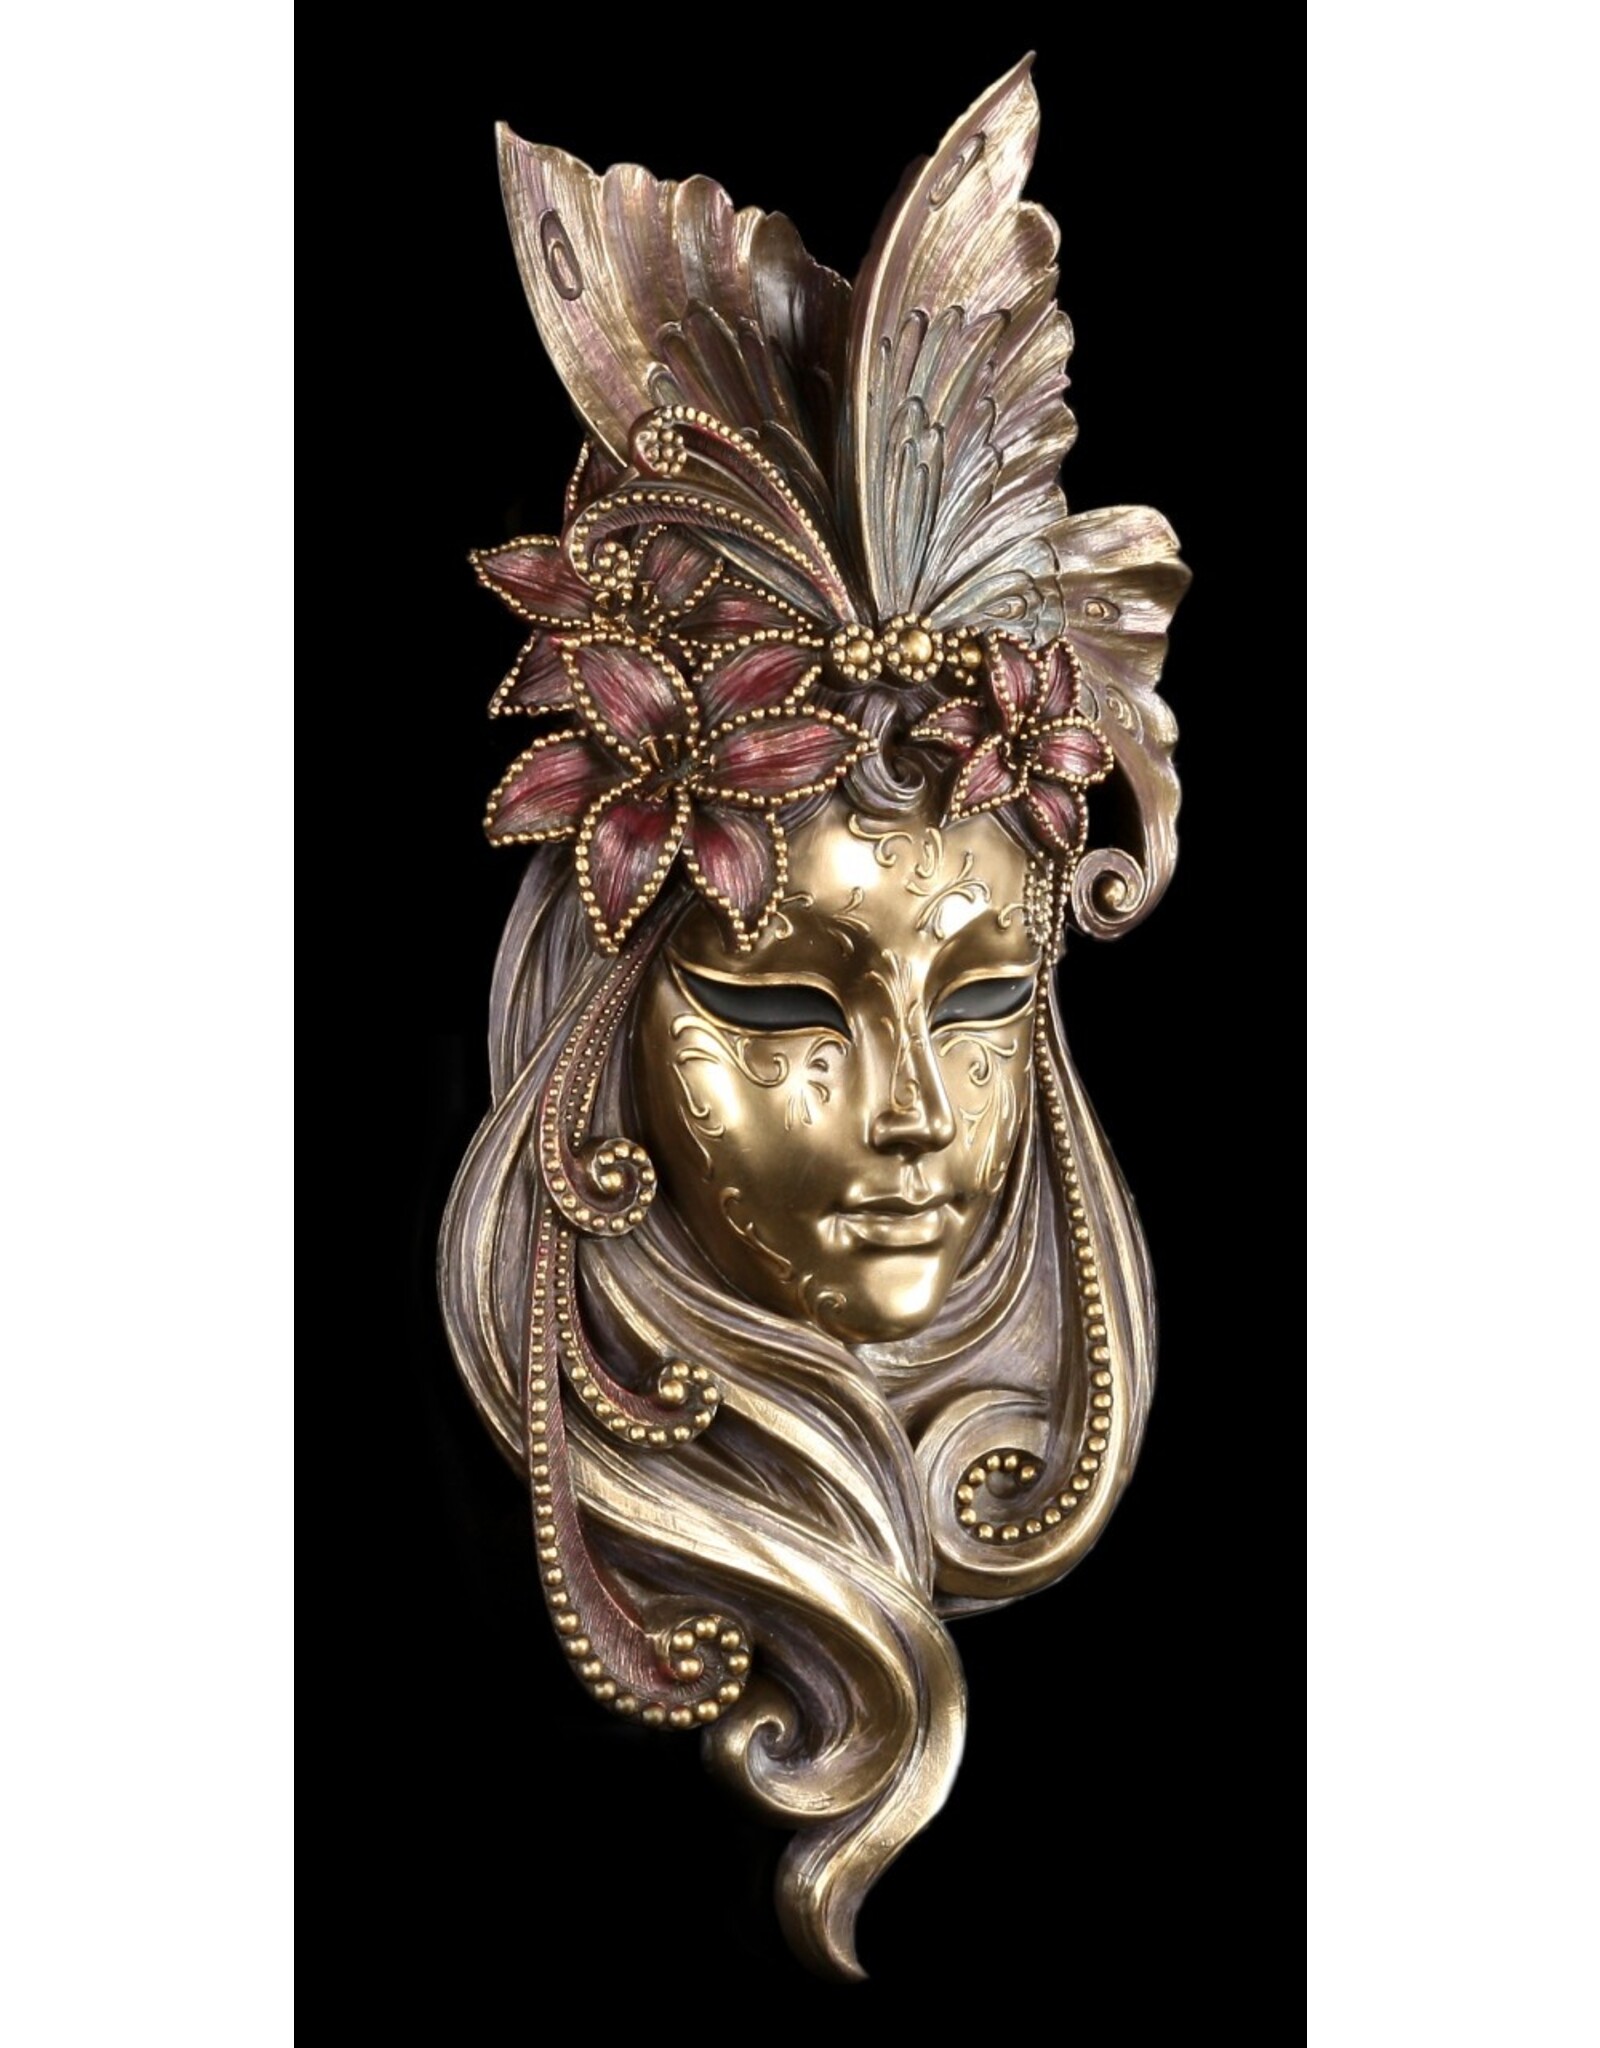 Veronese Design Miscellaneous - Venetian Mask Il Giglio (Lily) Veronese Design